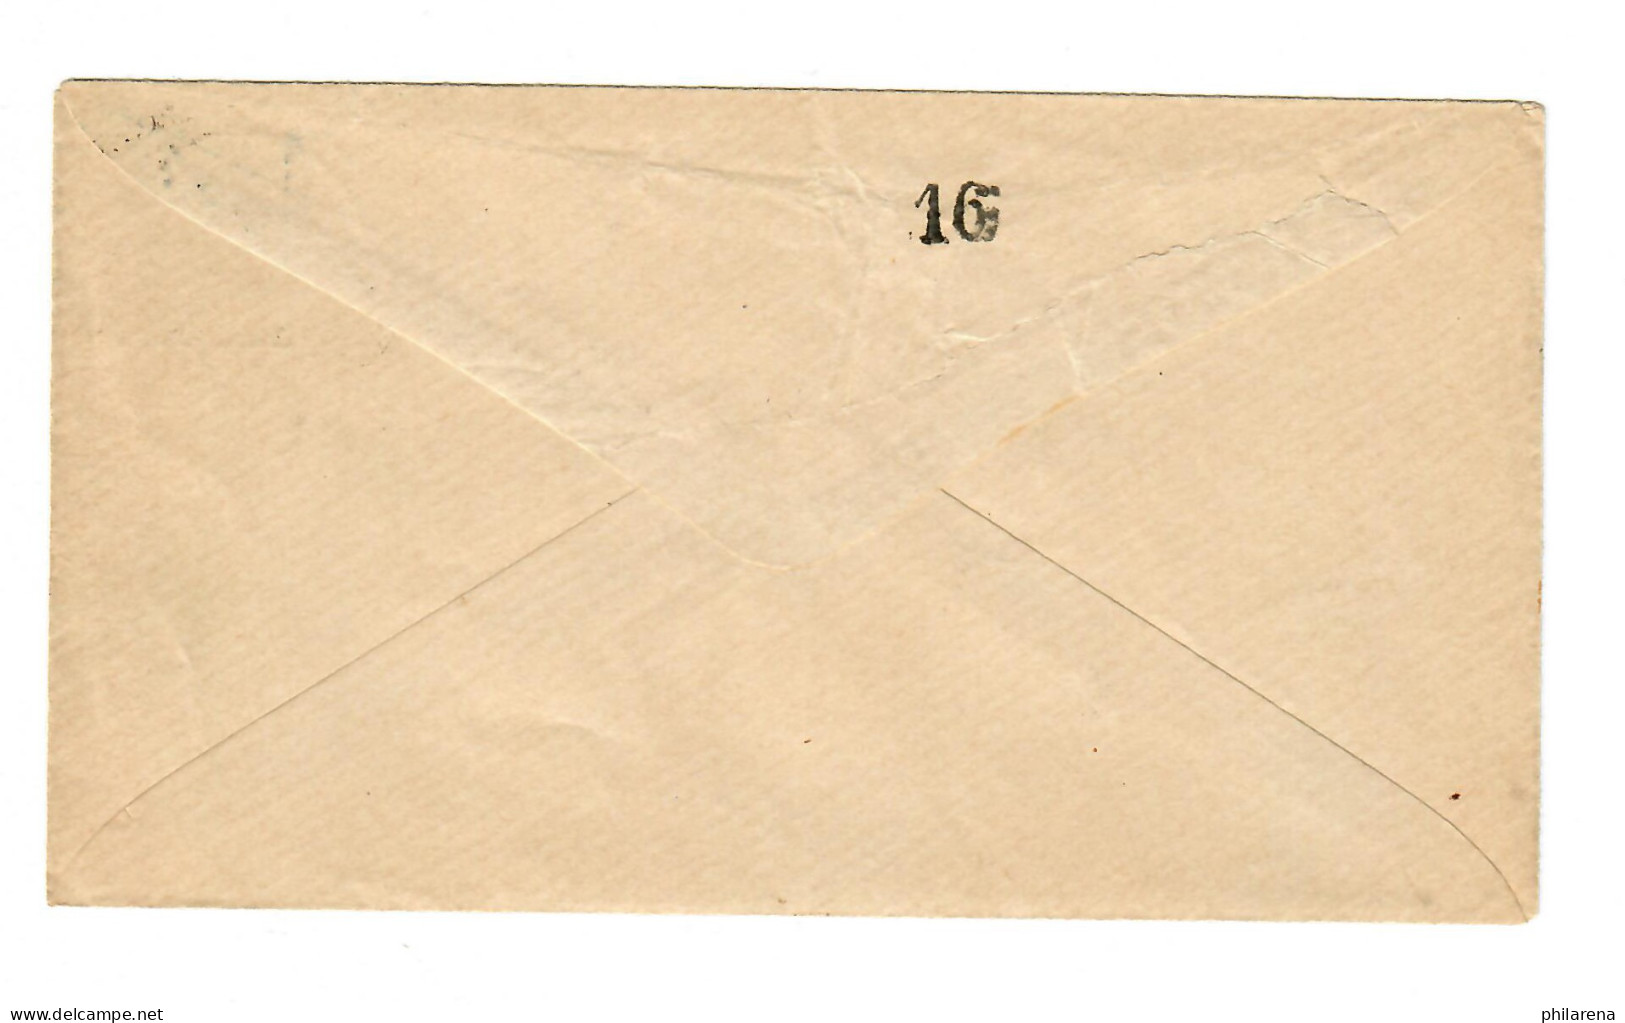 Stadtpost Stuttgart 1886, Ganzsachen Umschlag - Covers & Documents